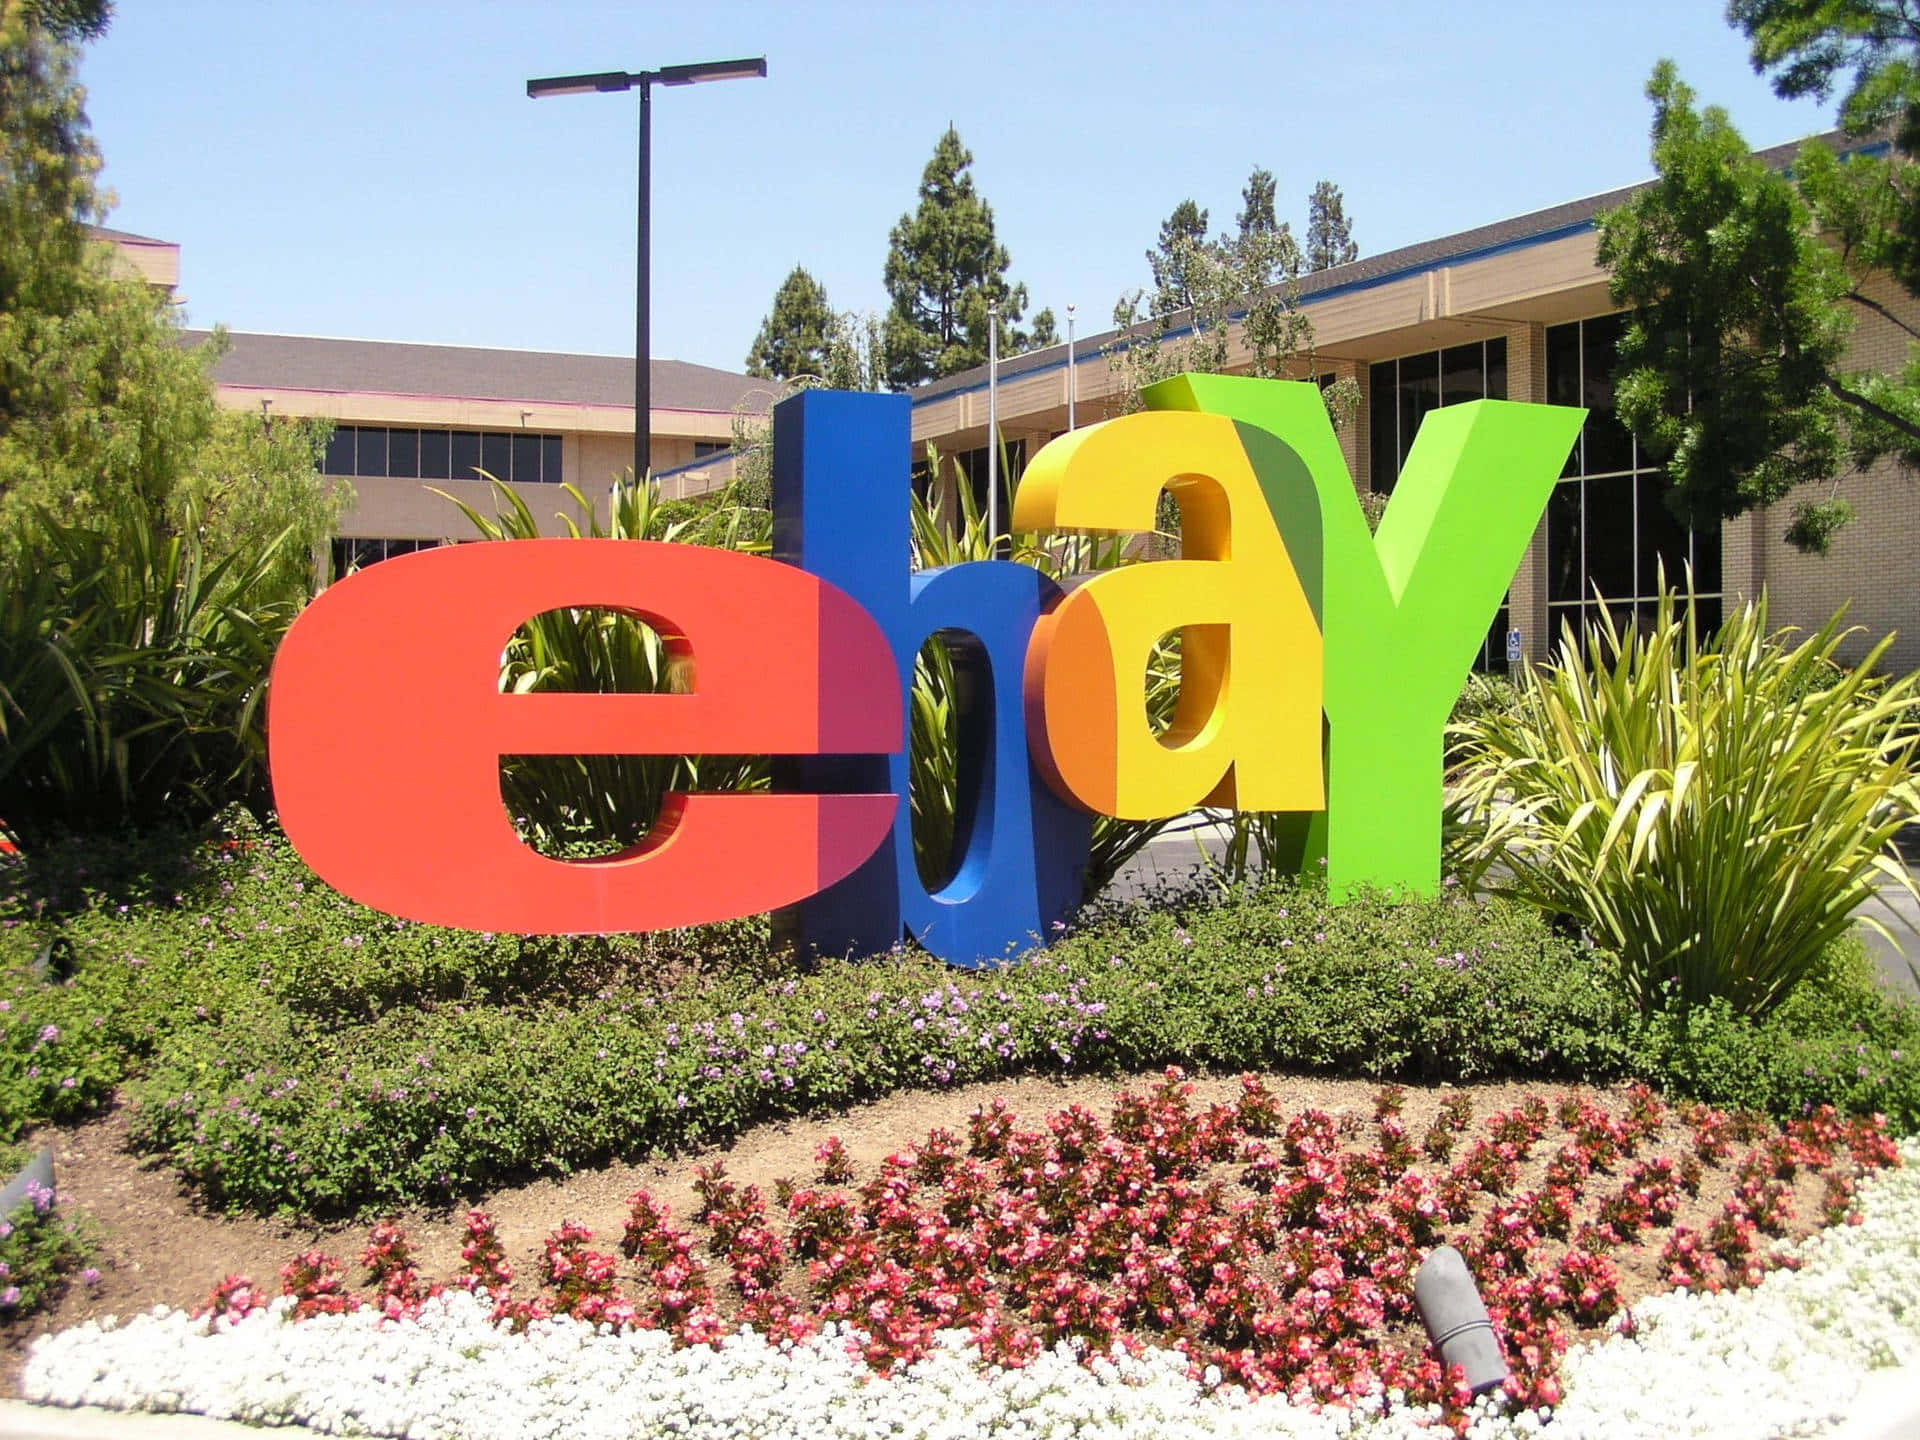 Logotipode Ebay Uk Con Arbustos. Fondo de pantalla